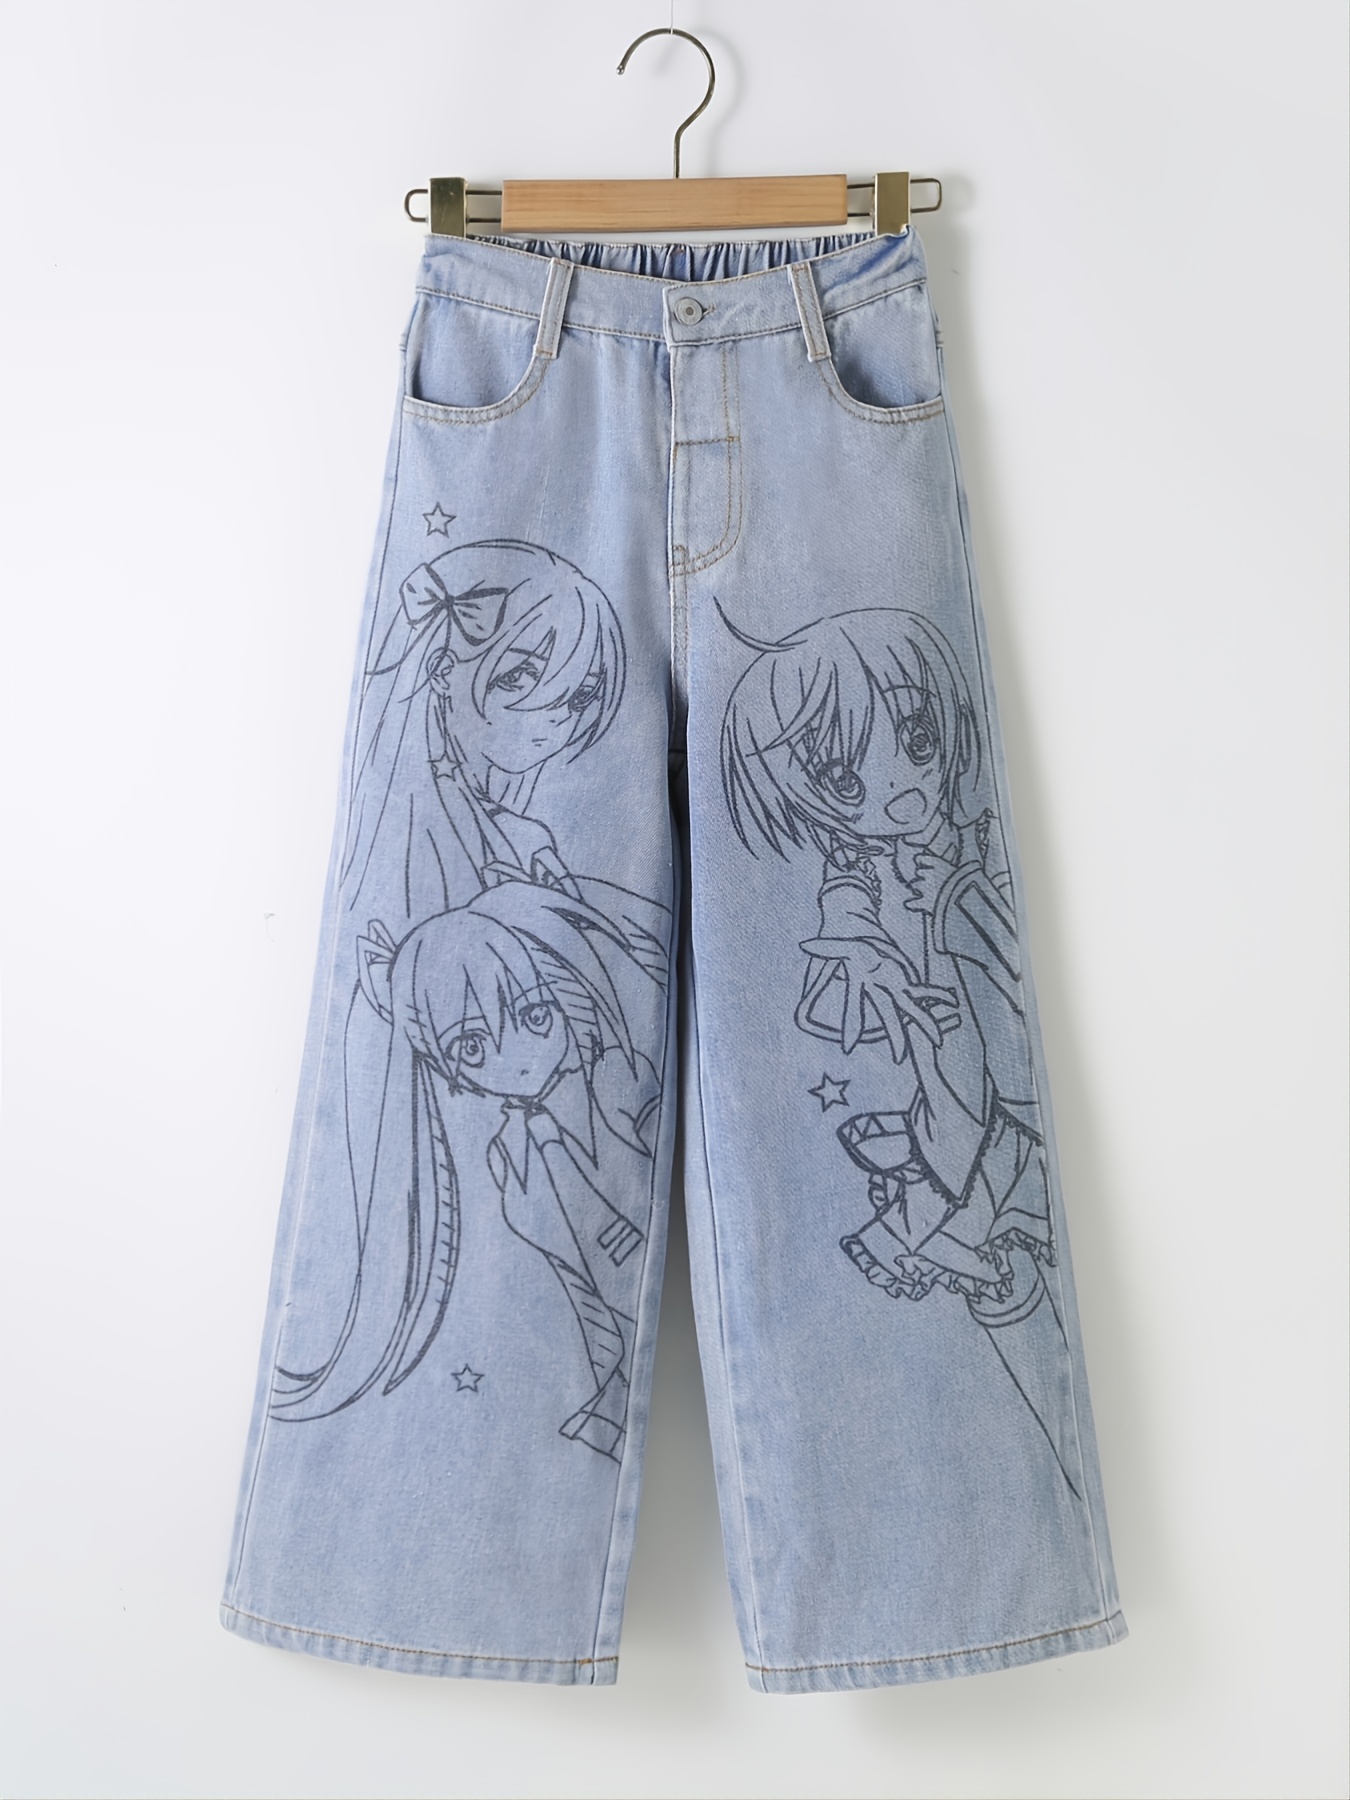 Anime Jeans Custom Cartoon Hand Painted - Etsy New Zealand